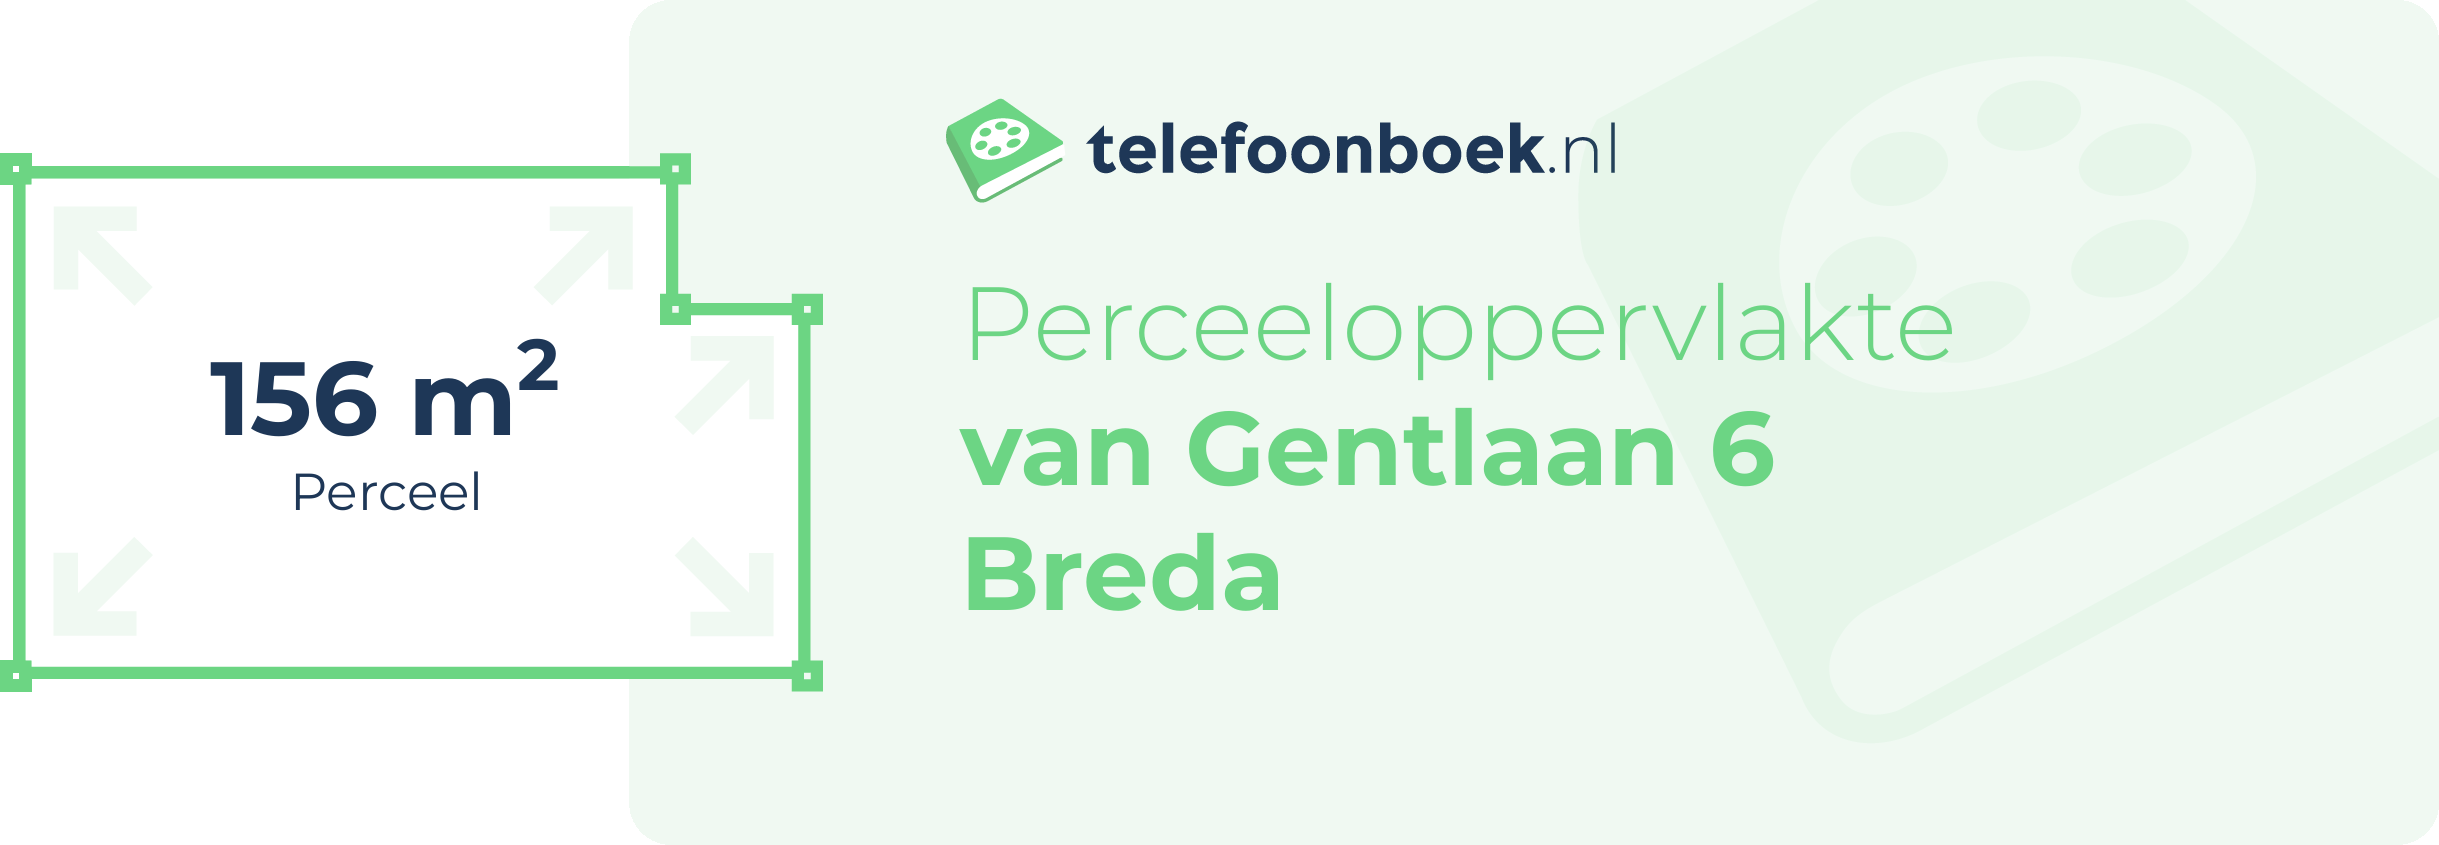 Perceeloppervlakte Van Gentlaan 6 Breda